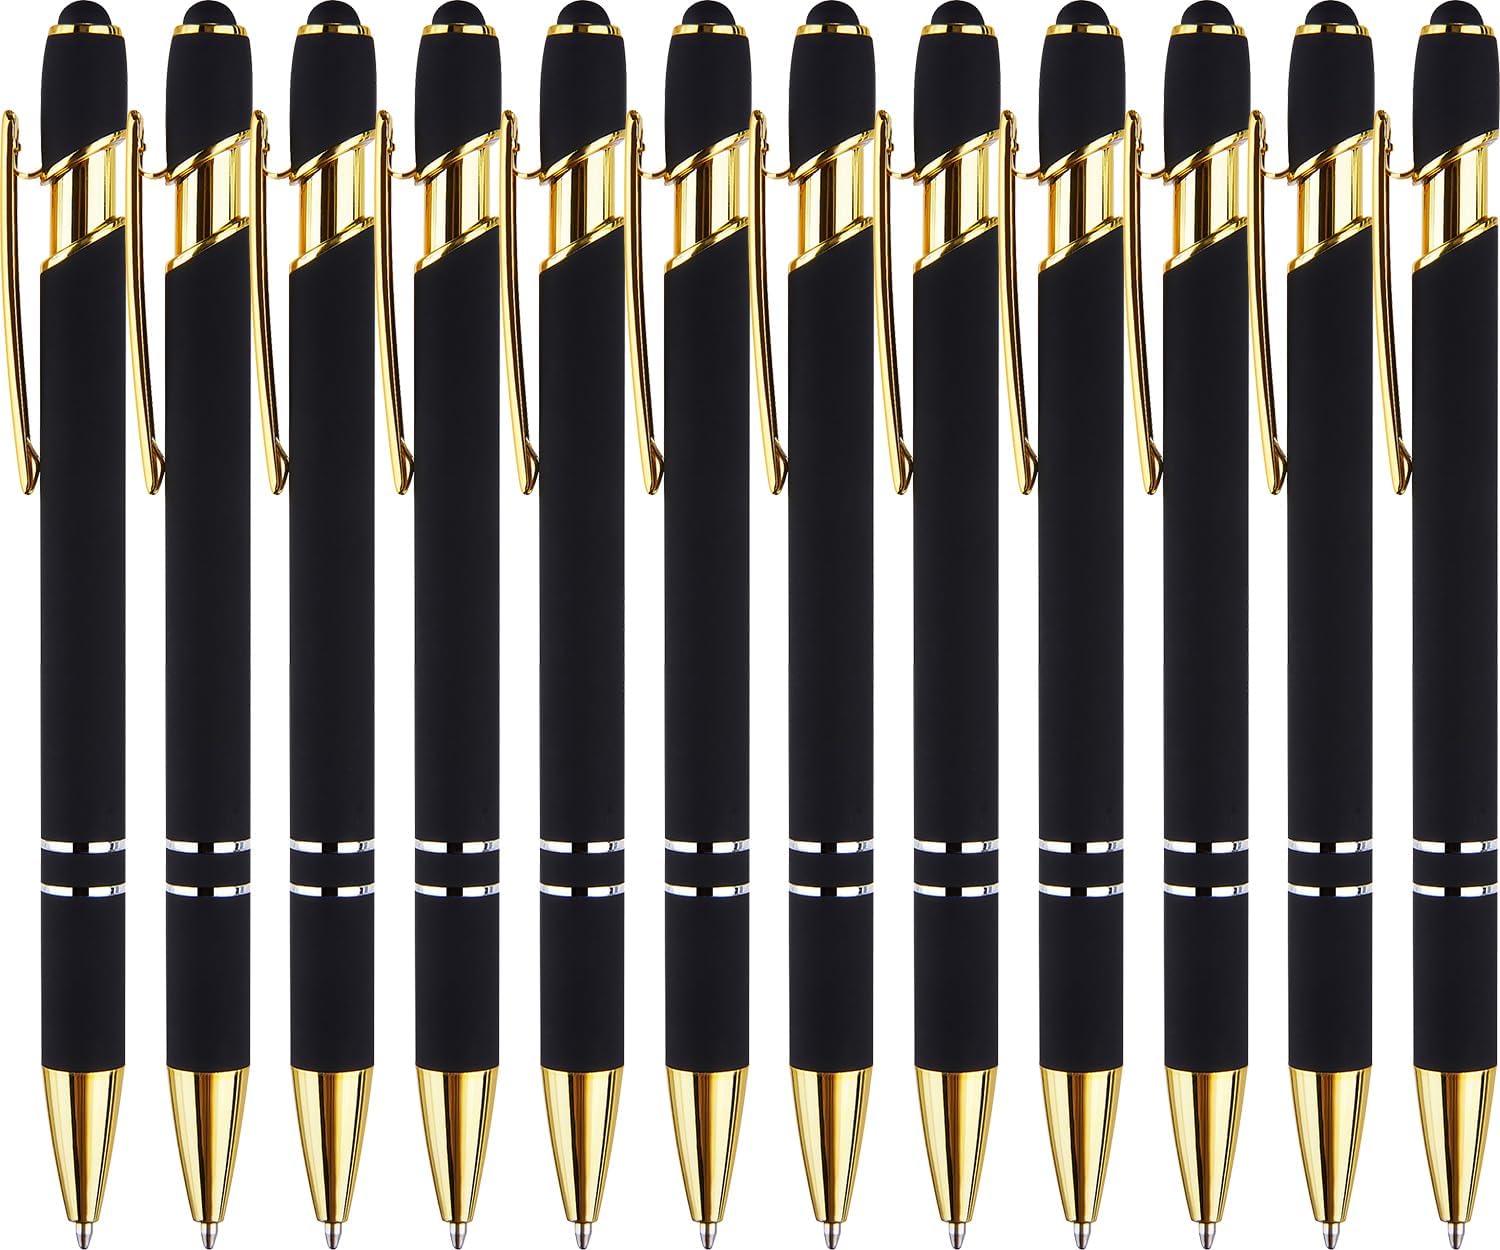 12 Pack Gold Ballpoint Pens for Wedding Guest Book, Bulk Office